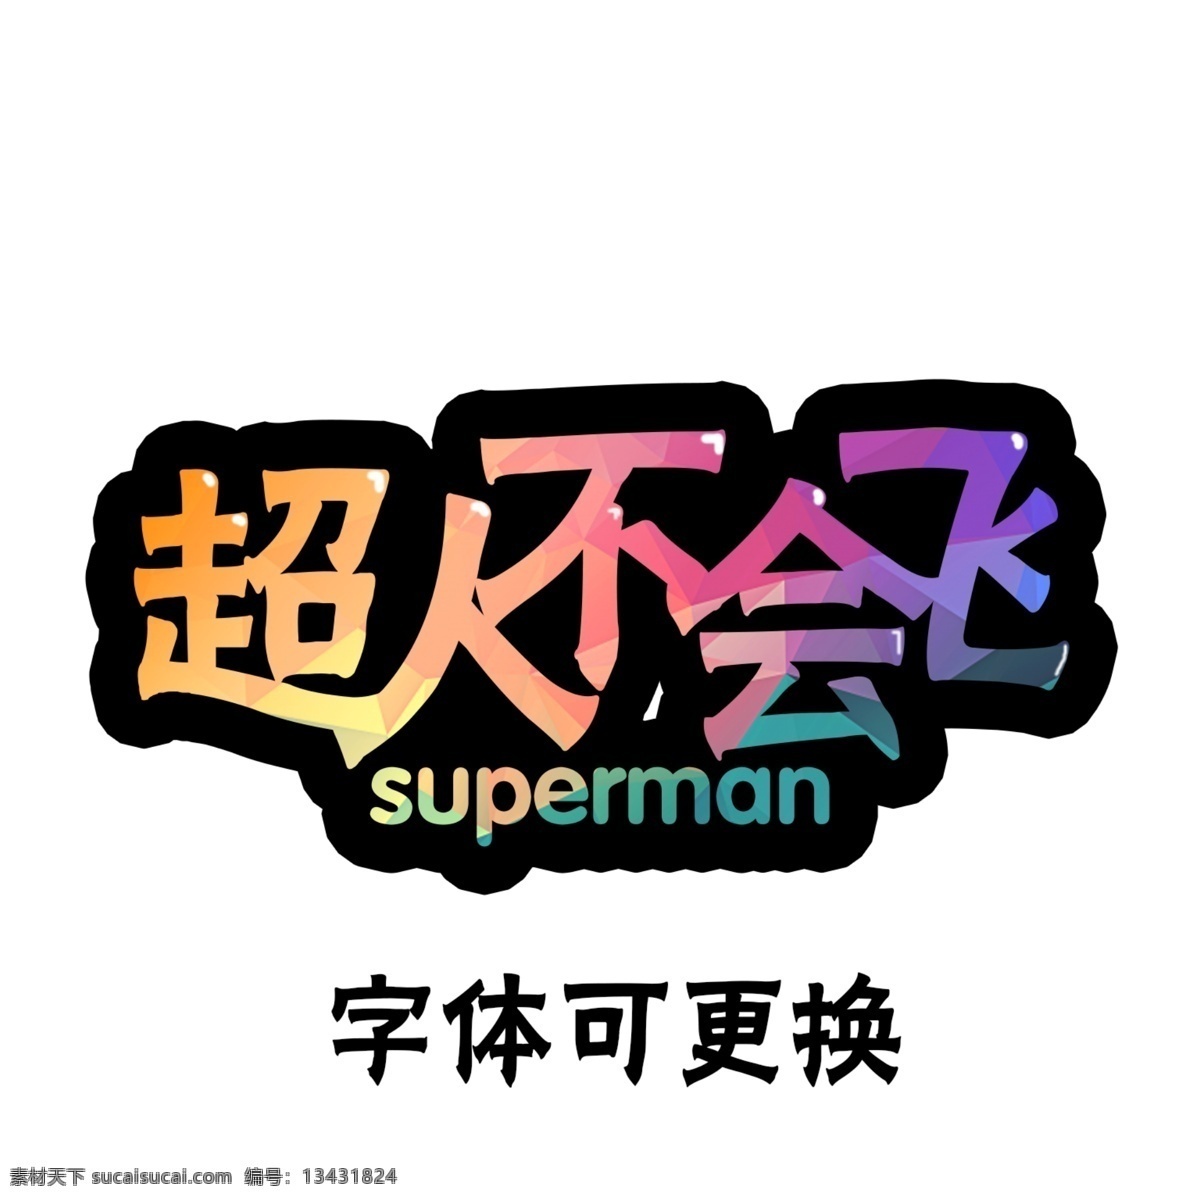 游戏 卡通 字体 卡通字体 游戏字体 超人 超人不会飞 superman 分层